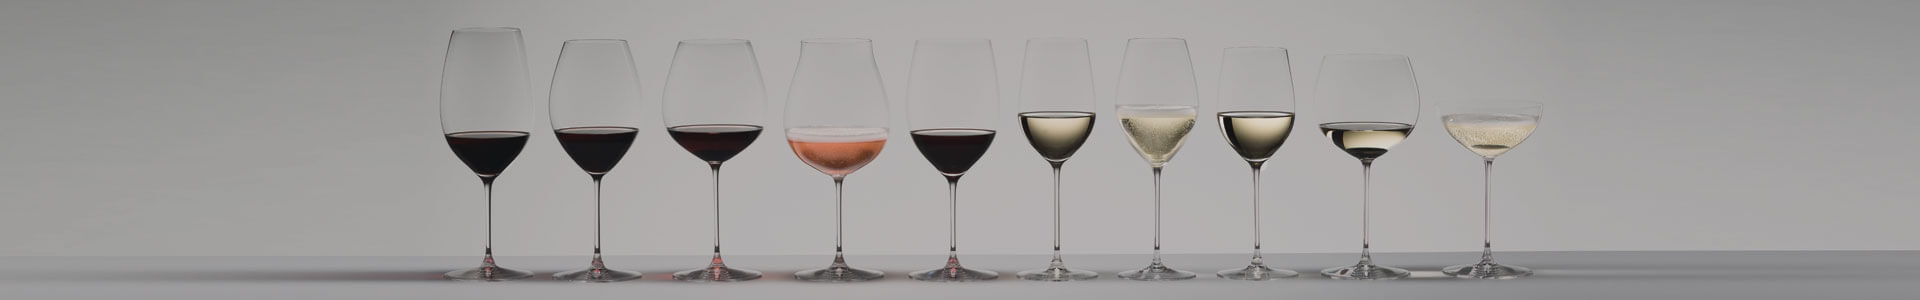 Zahlreiche Weingläser und andere Stielgläser aus der Serie Riedel Veritas stehen gefüllt nebeneinander.